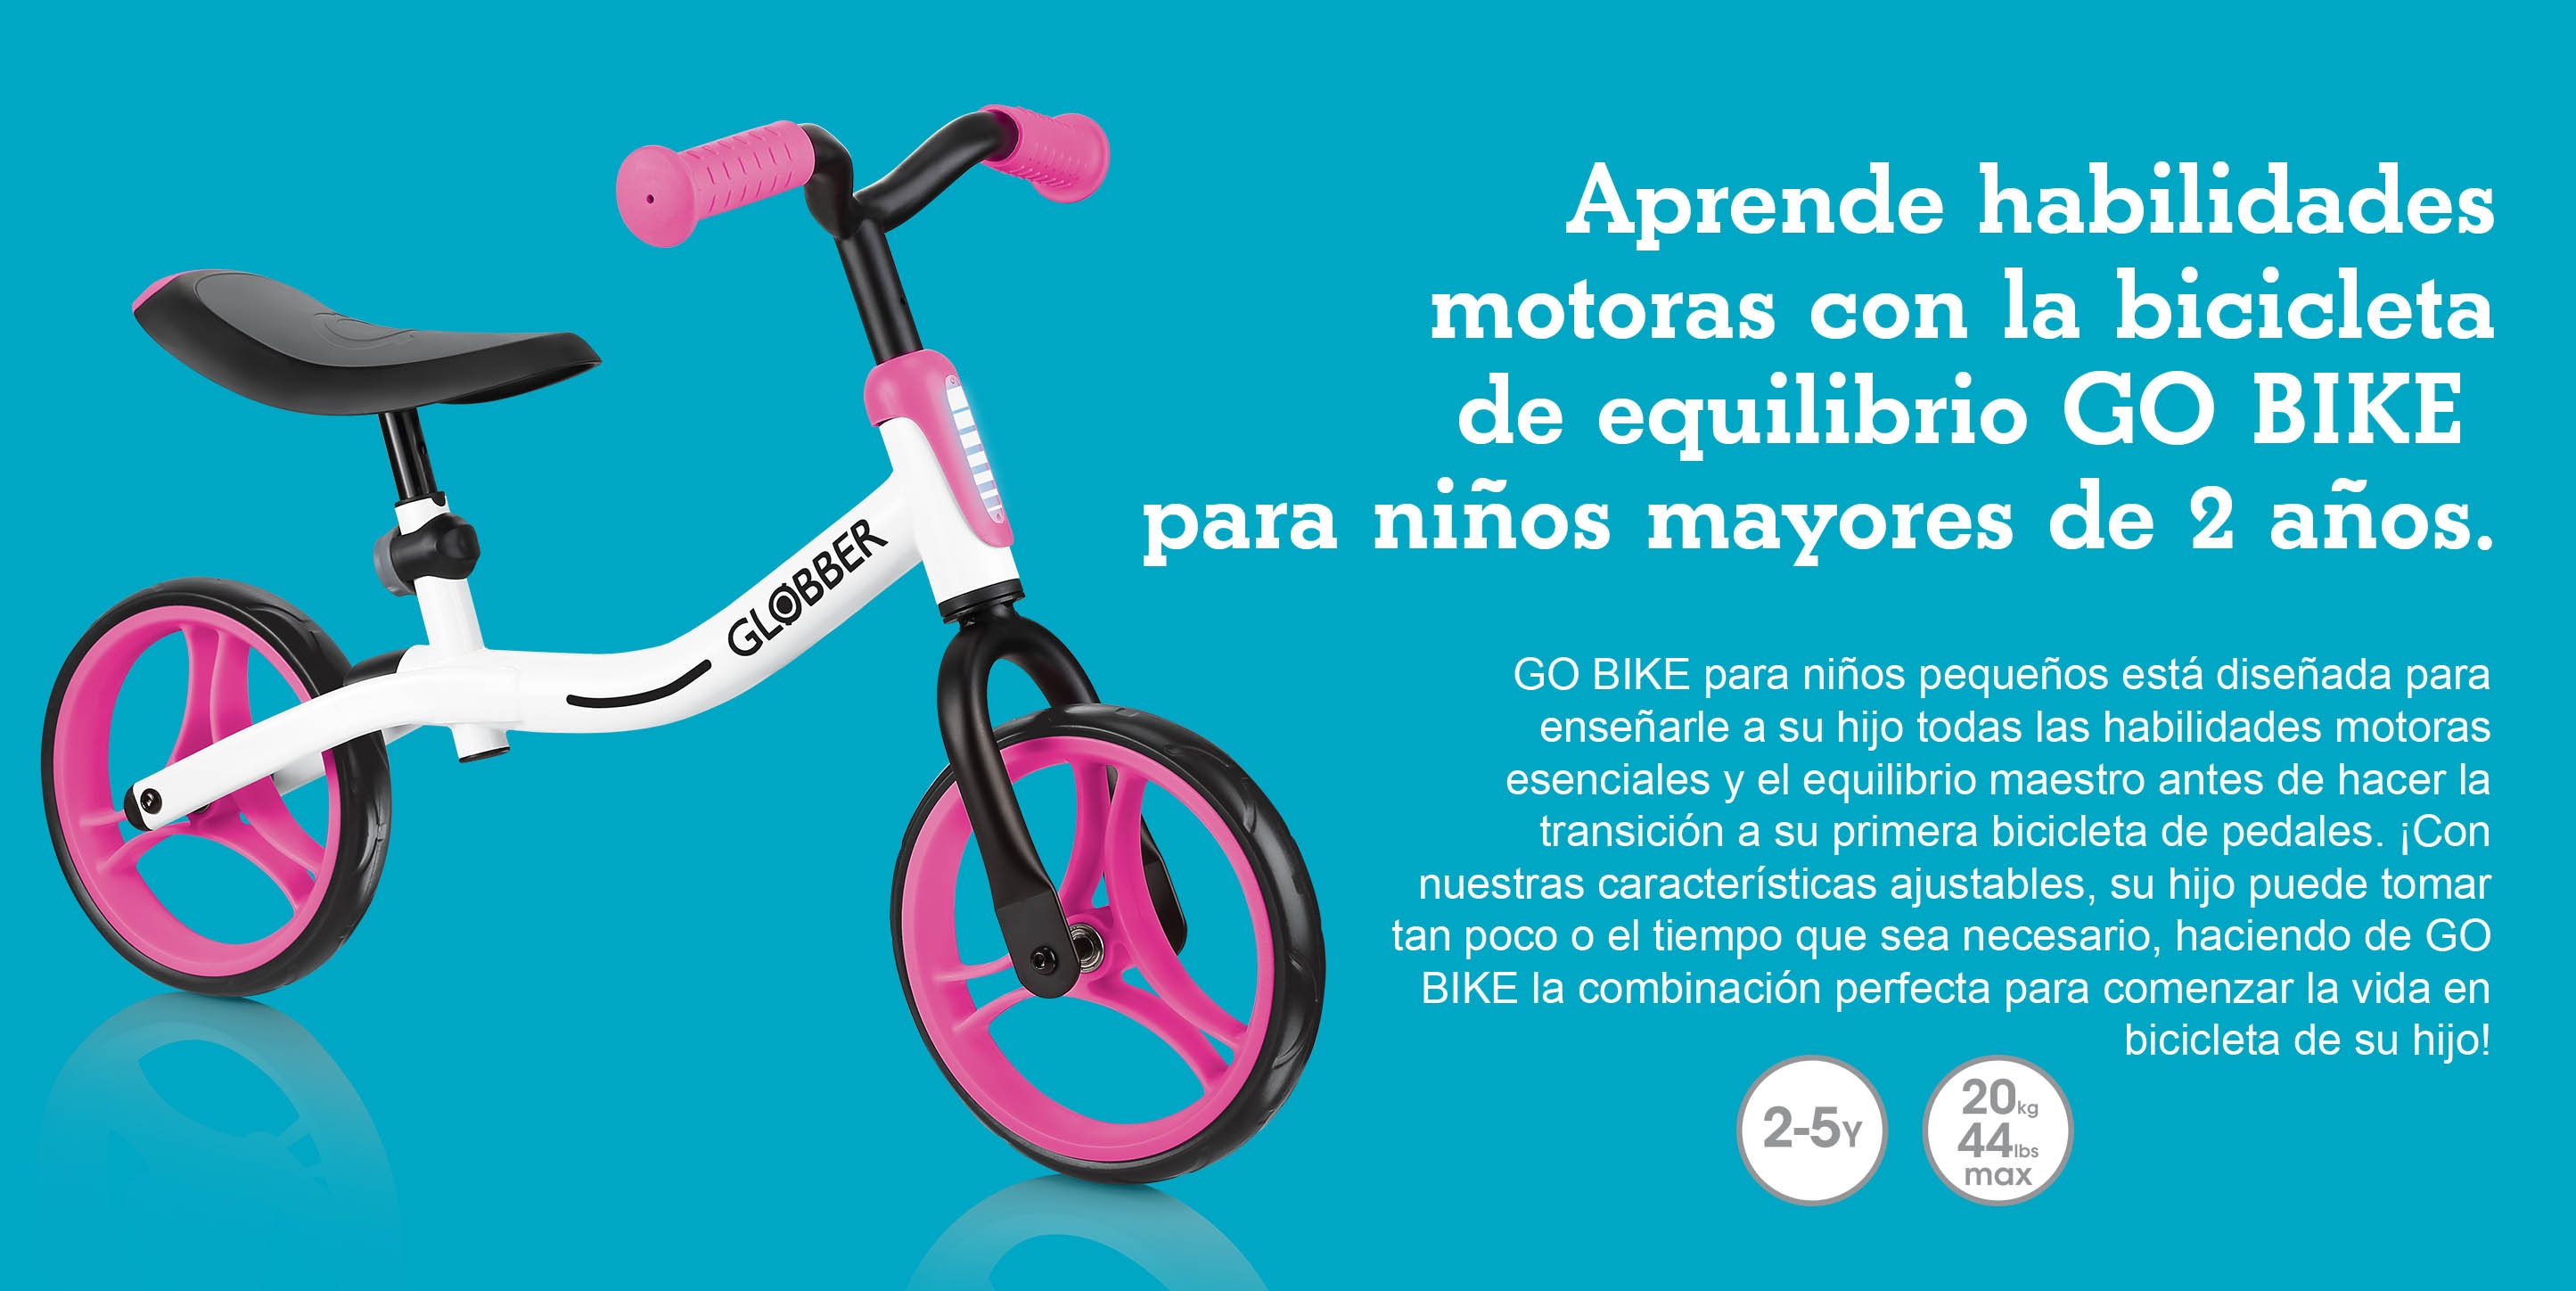 Aprende habilidades motoras con la bicicleta de equilibrio GO BIKE para niños mayores de 2 años